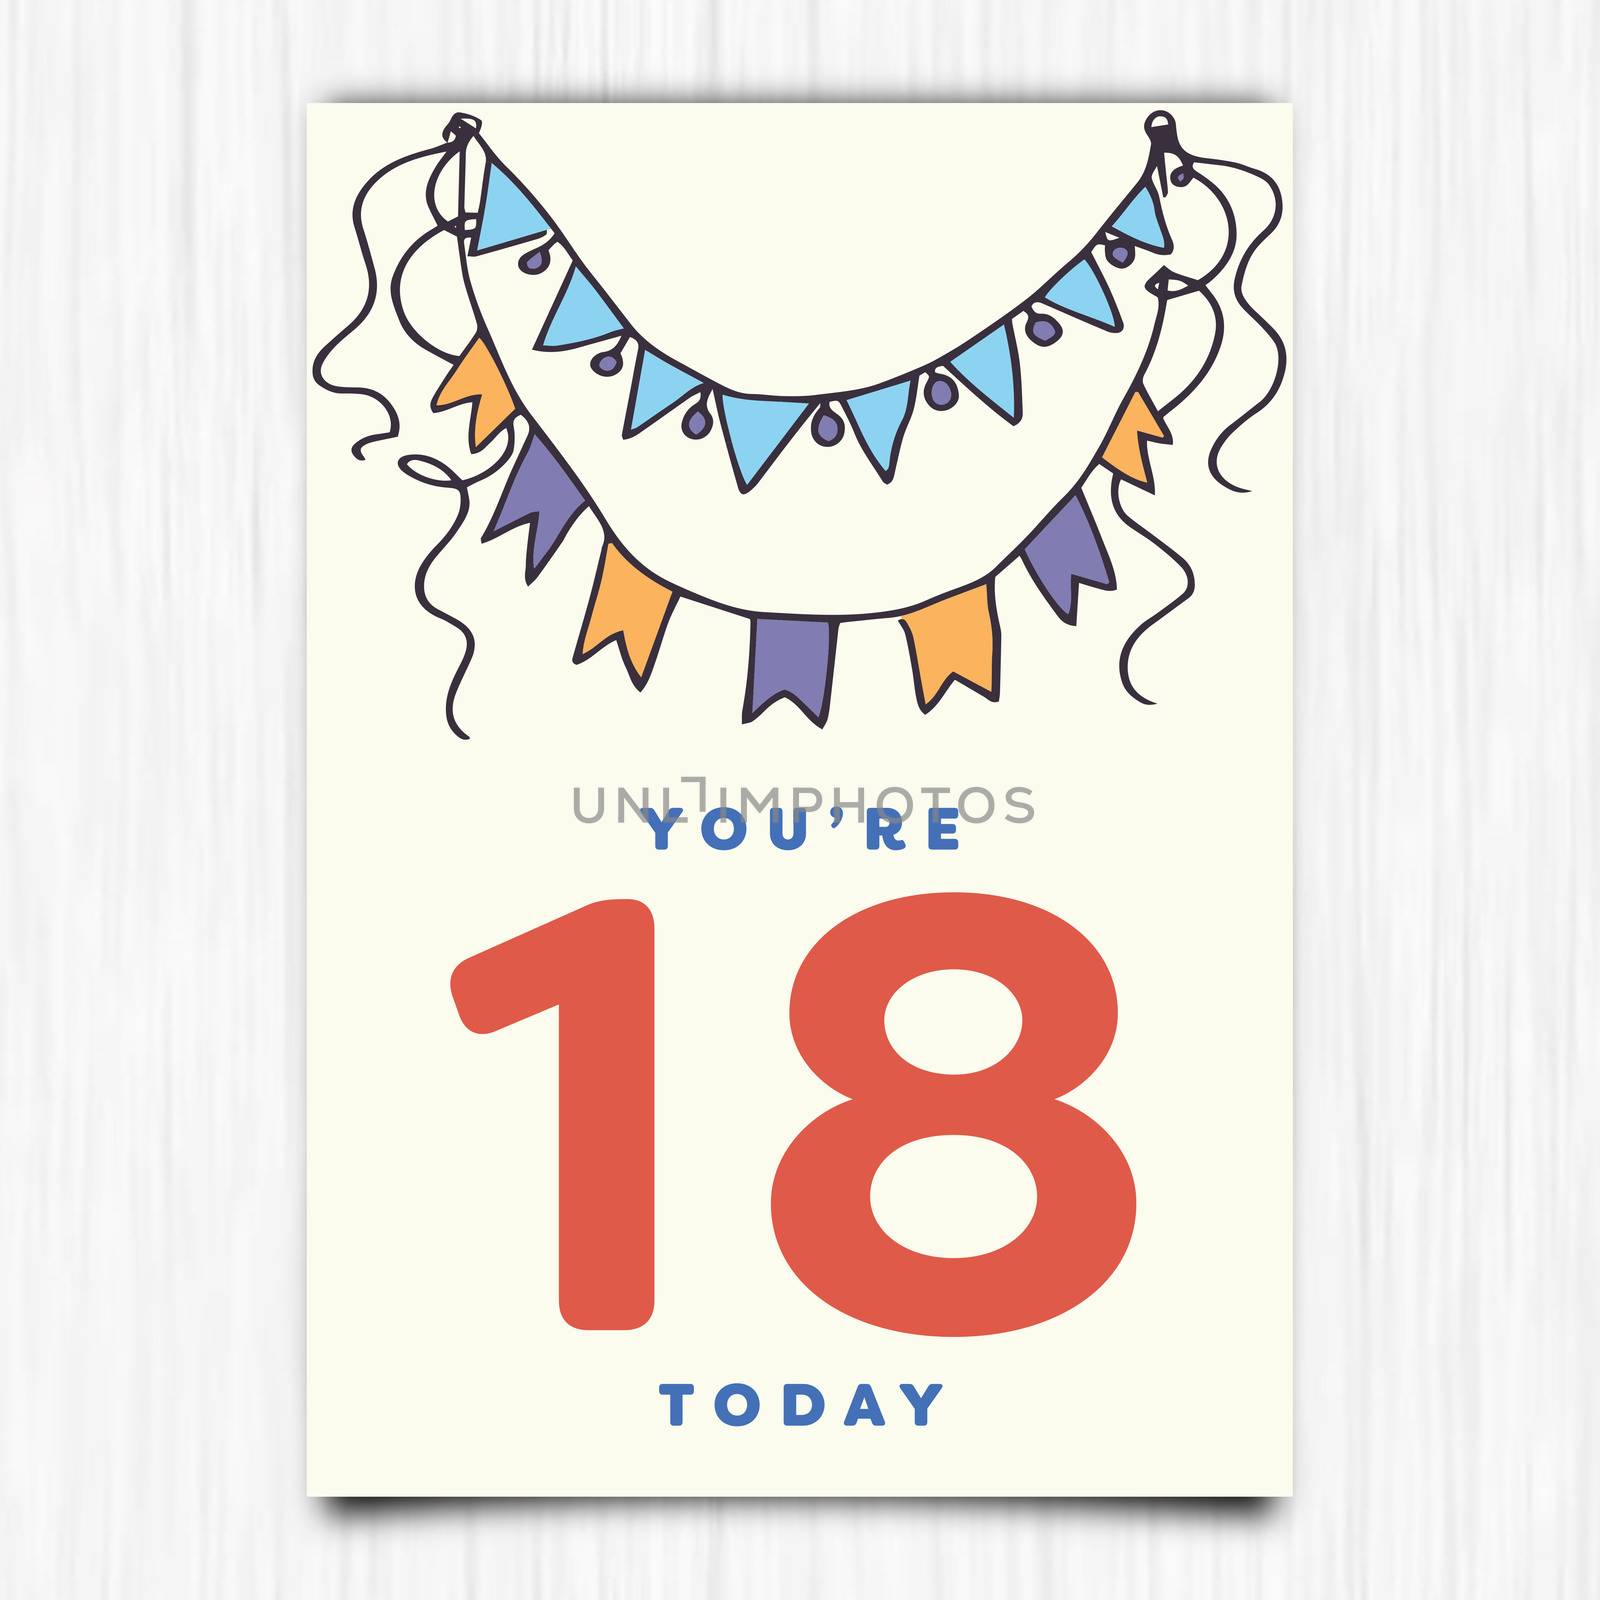 Happy birthday 18th years greeting card by Wavebreakmedia